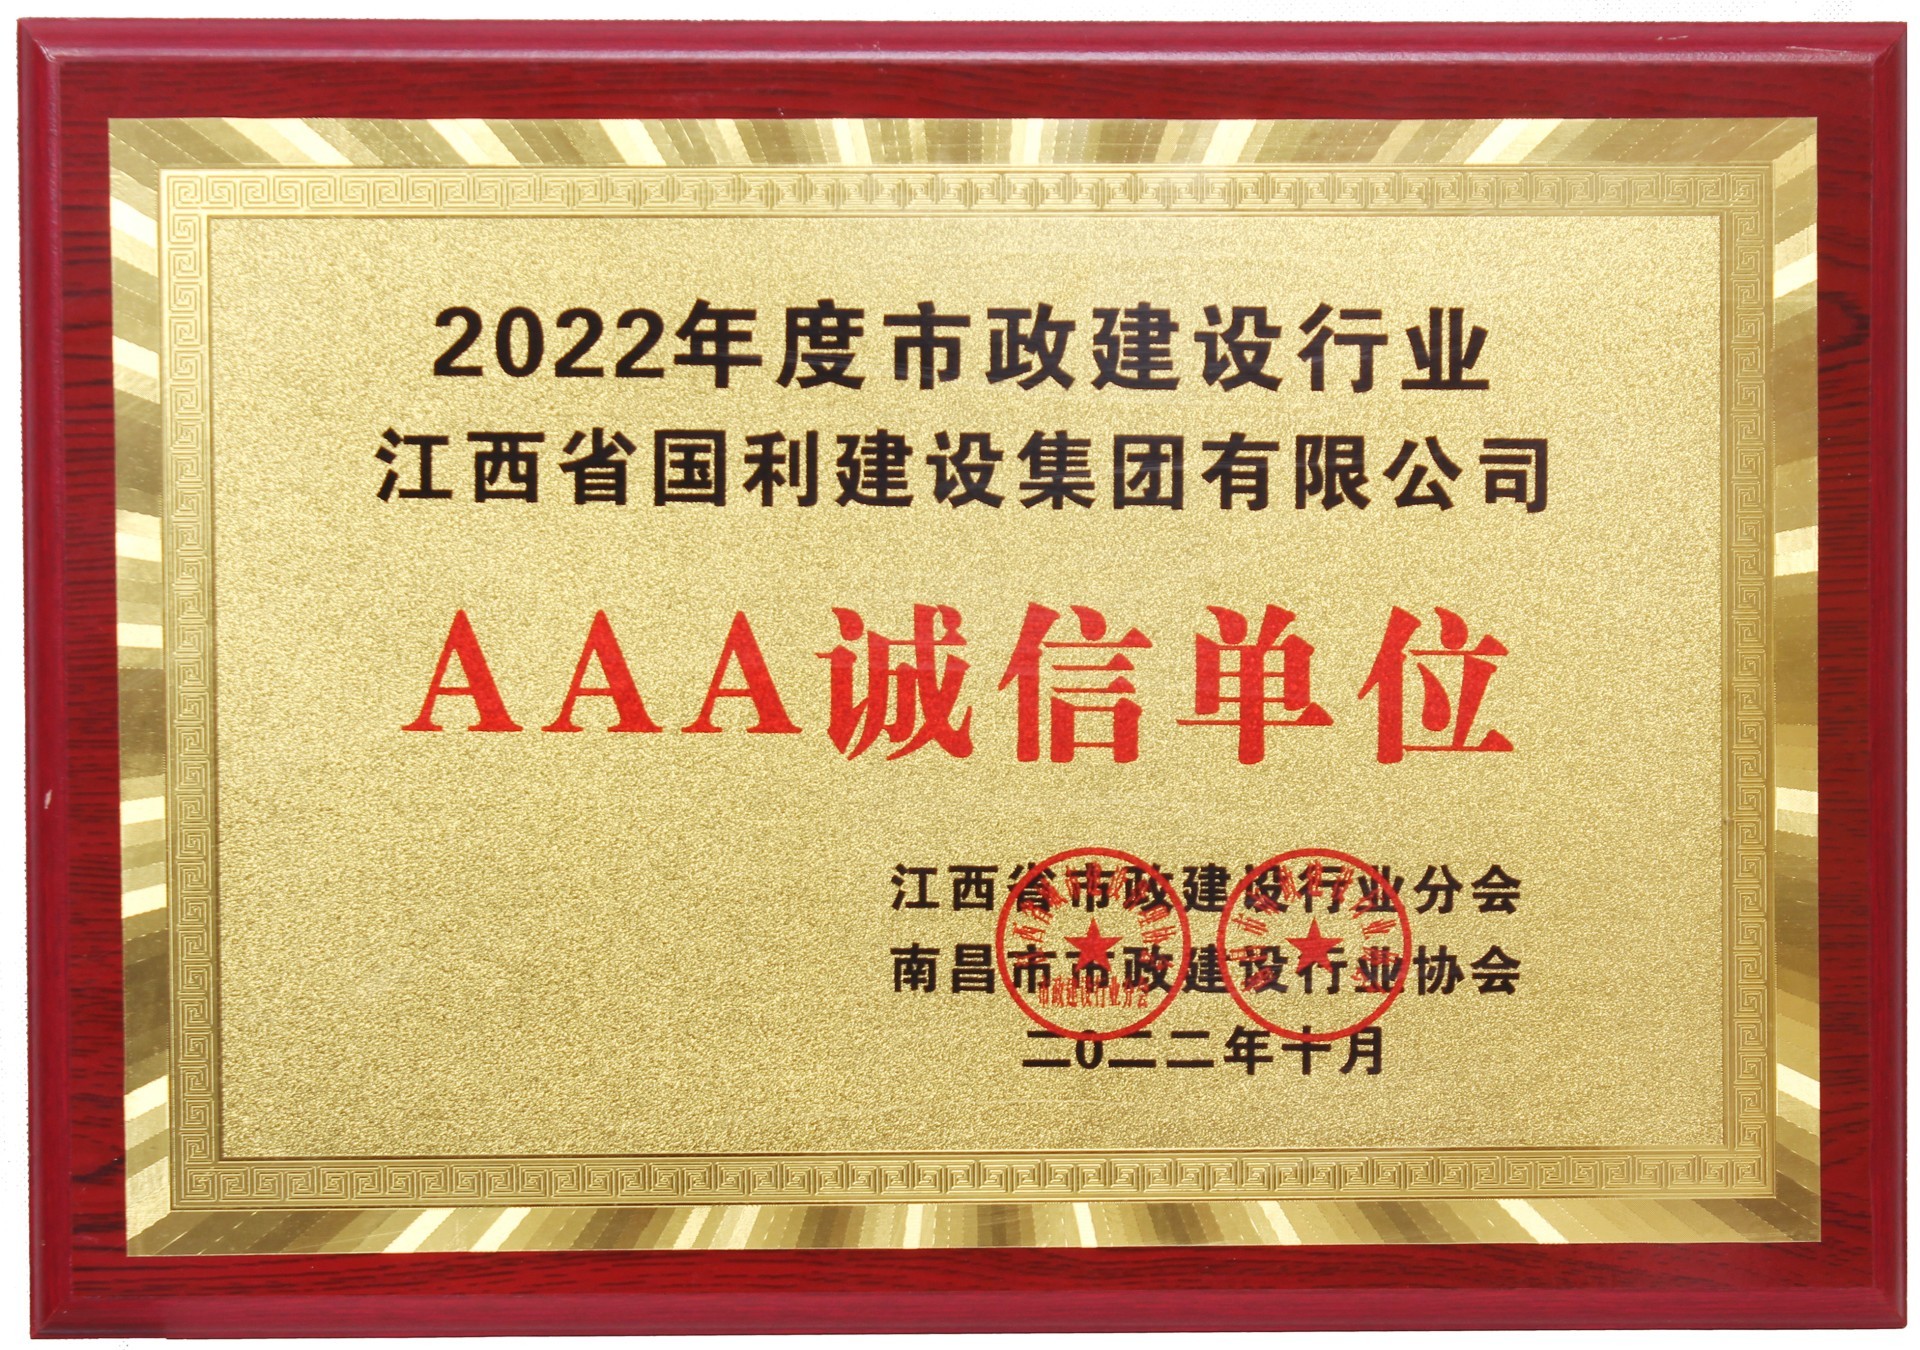 江西省国利建设集团有限公司 被授予2022年度市政建设行业AAA诚信单位